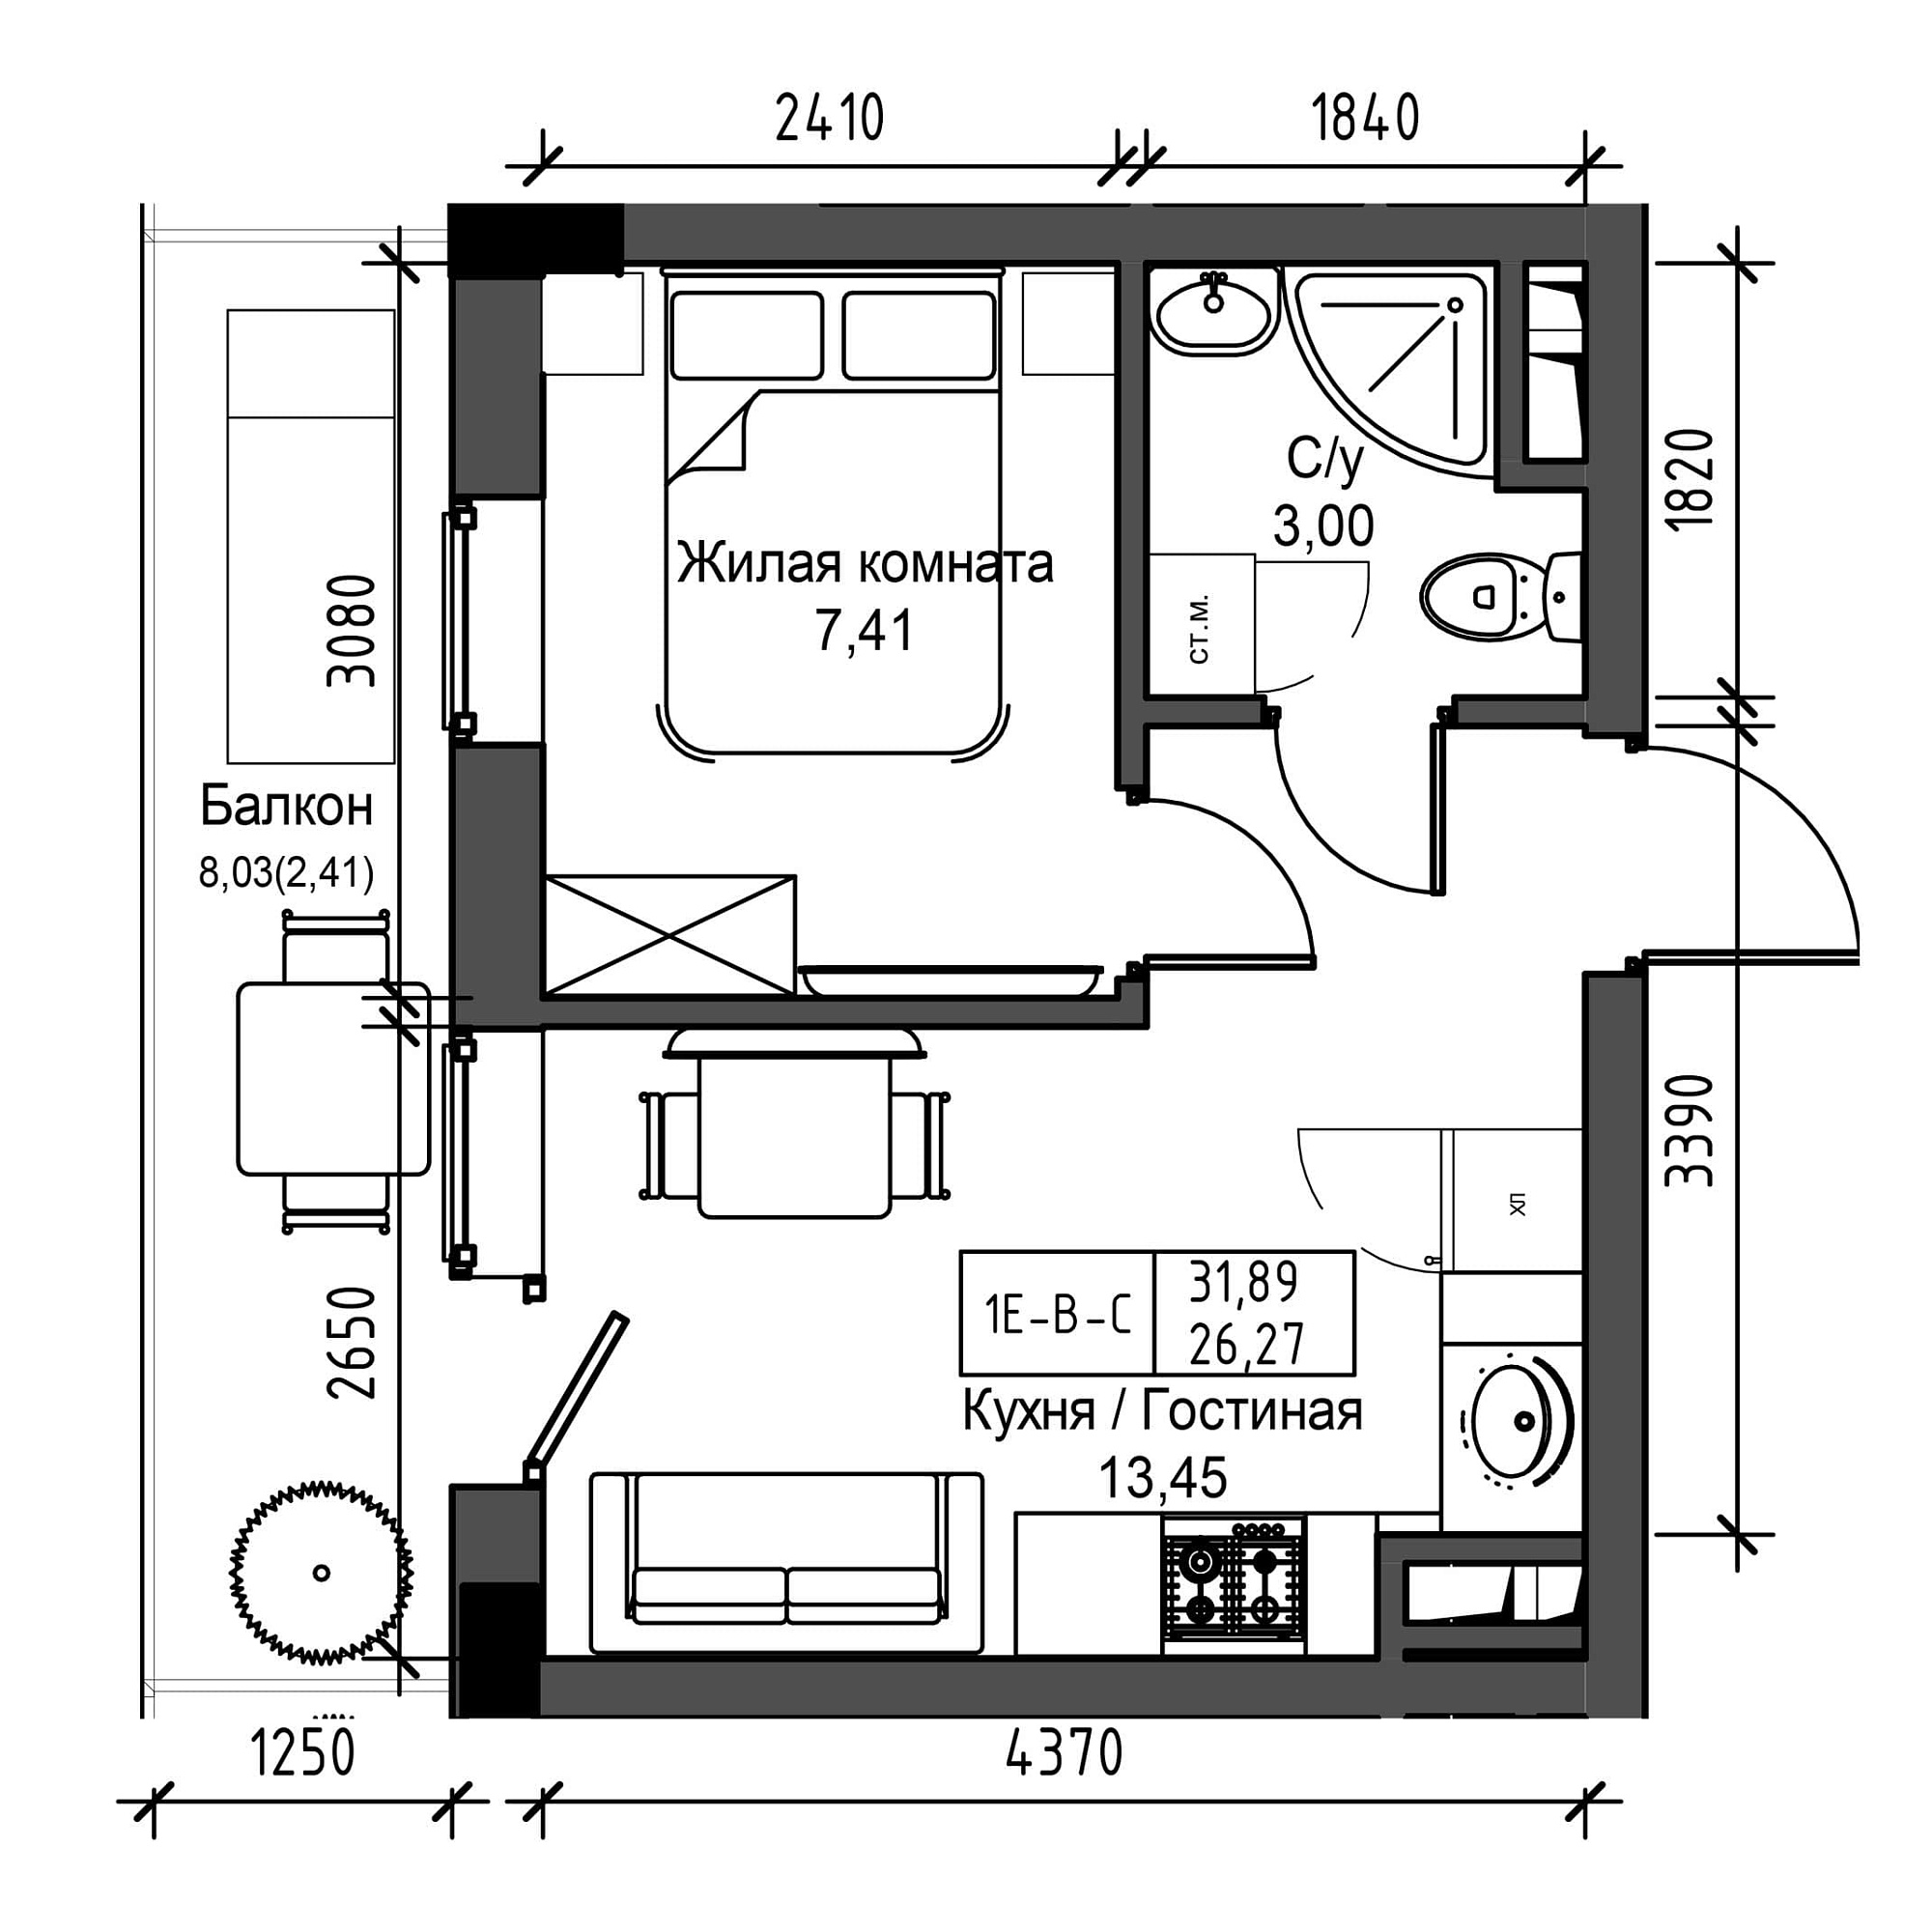 Планировка 1-к квартира площей 26.27м2, UM-001-06/0015.